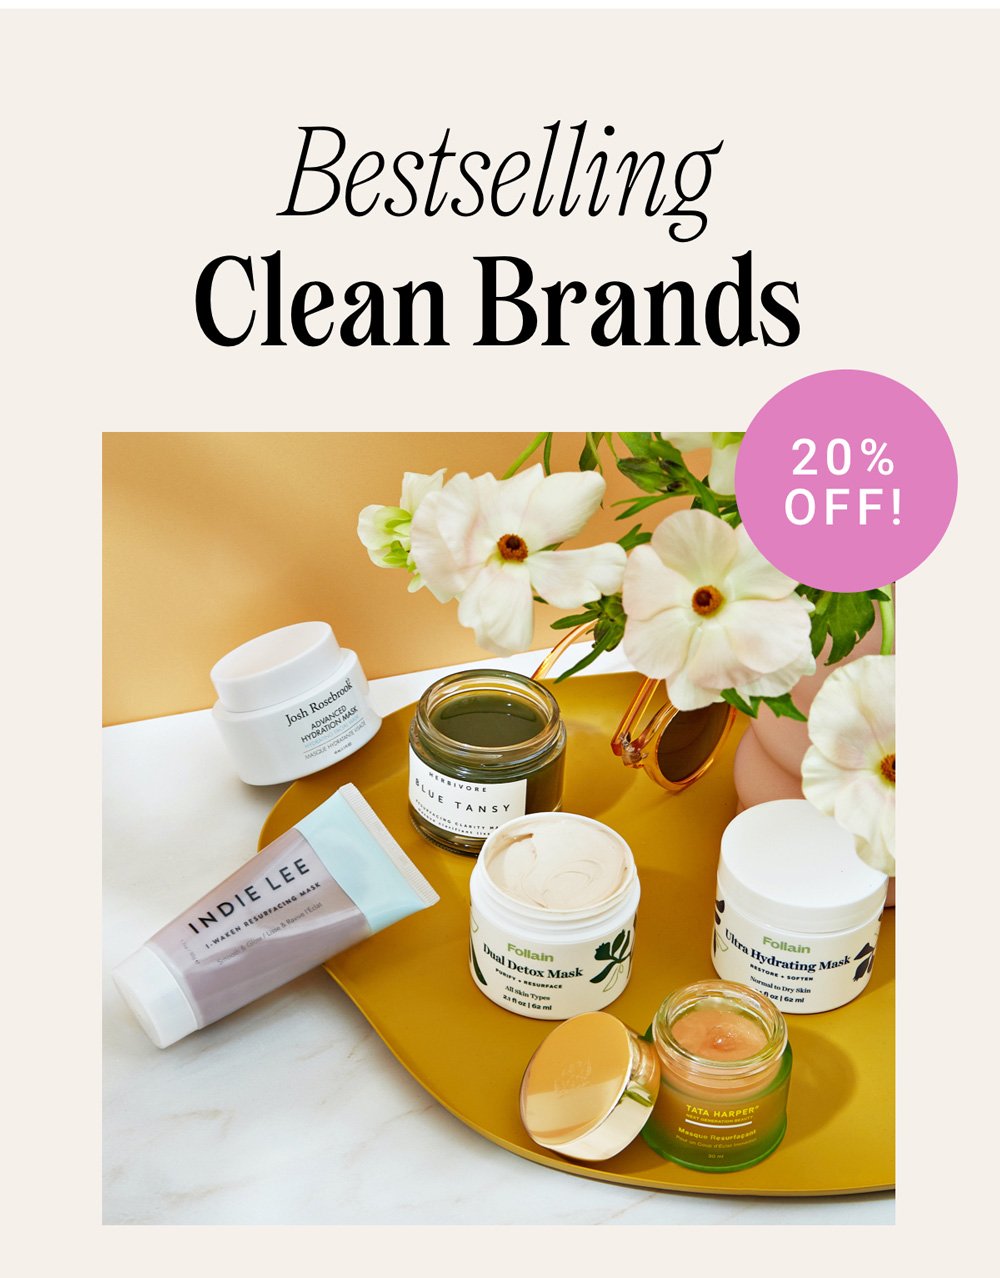 Bestselling Clean Brands